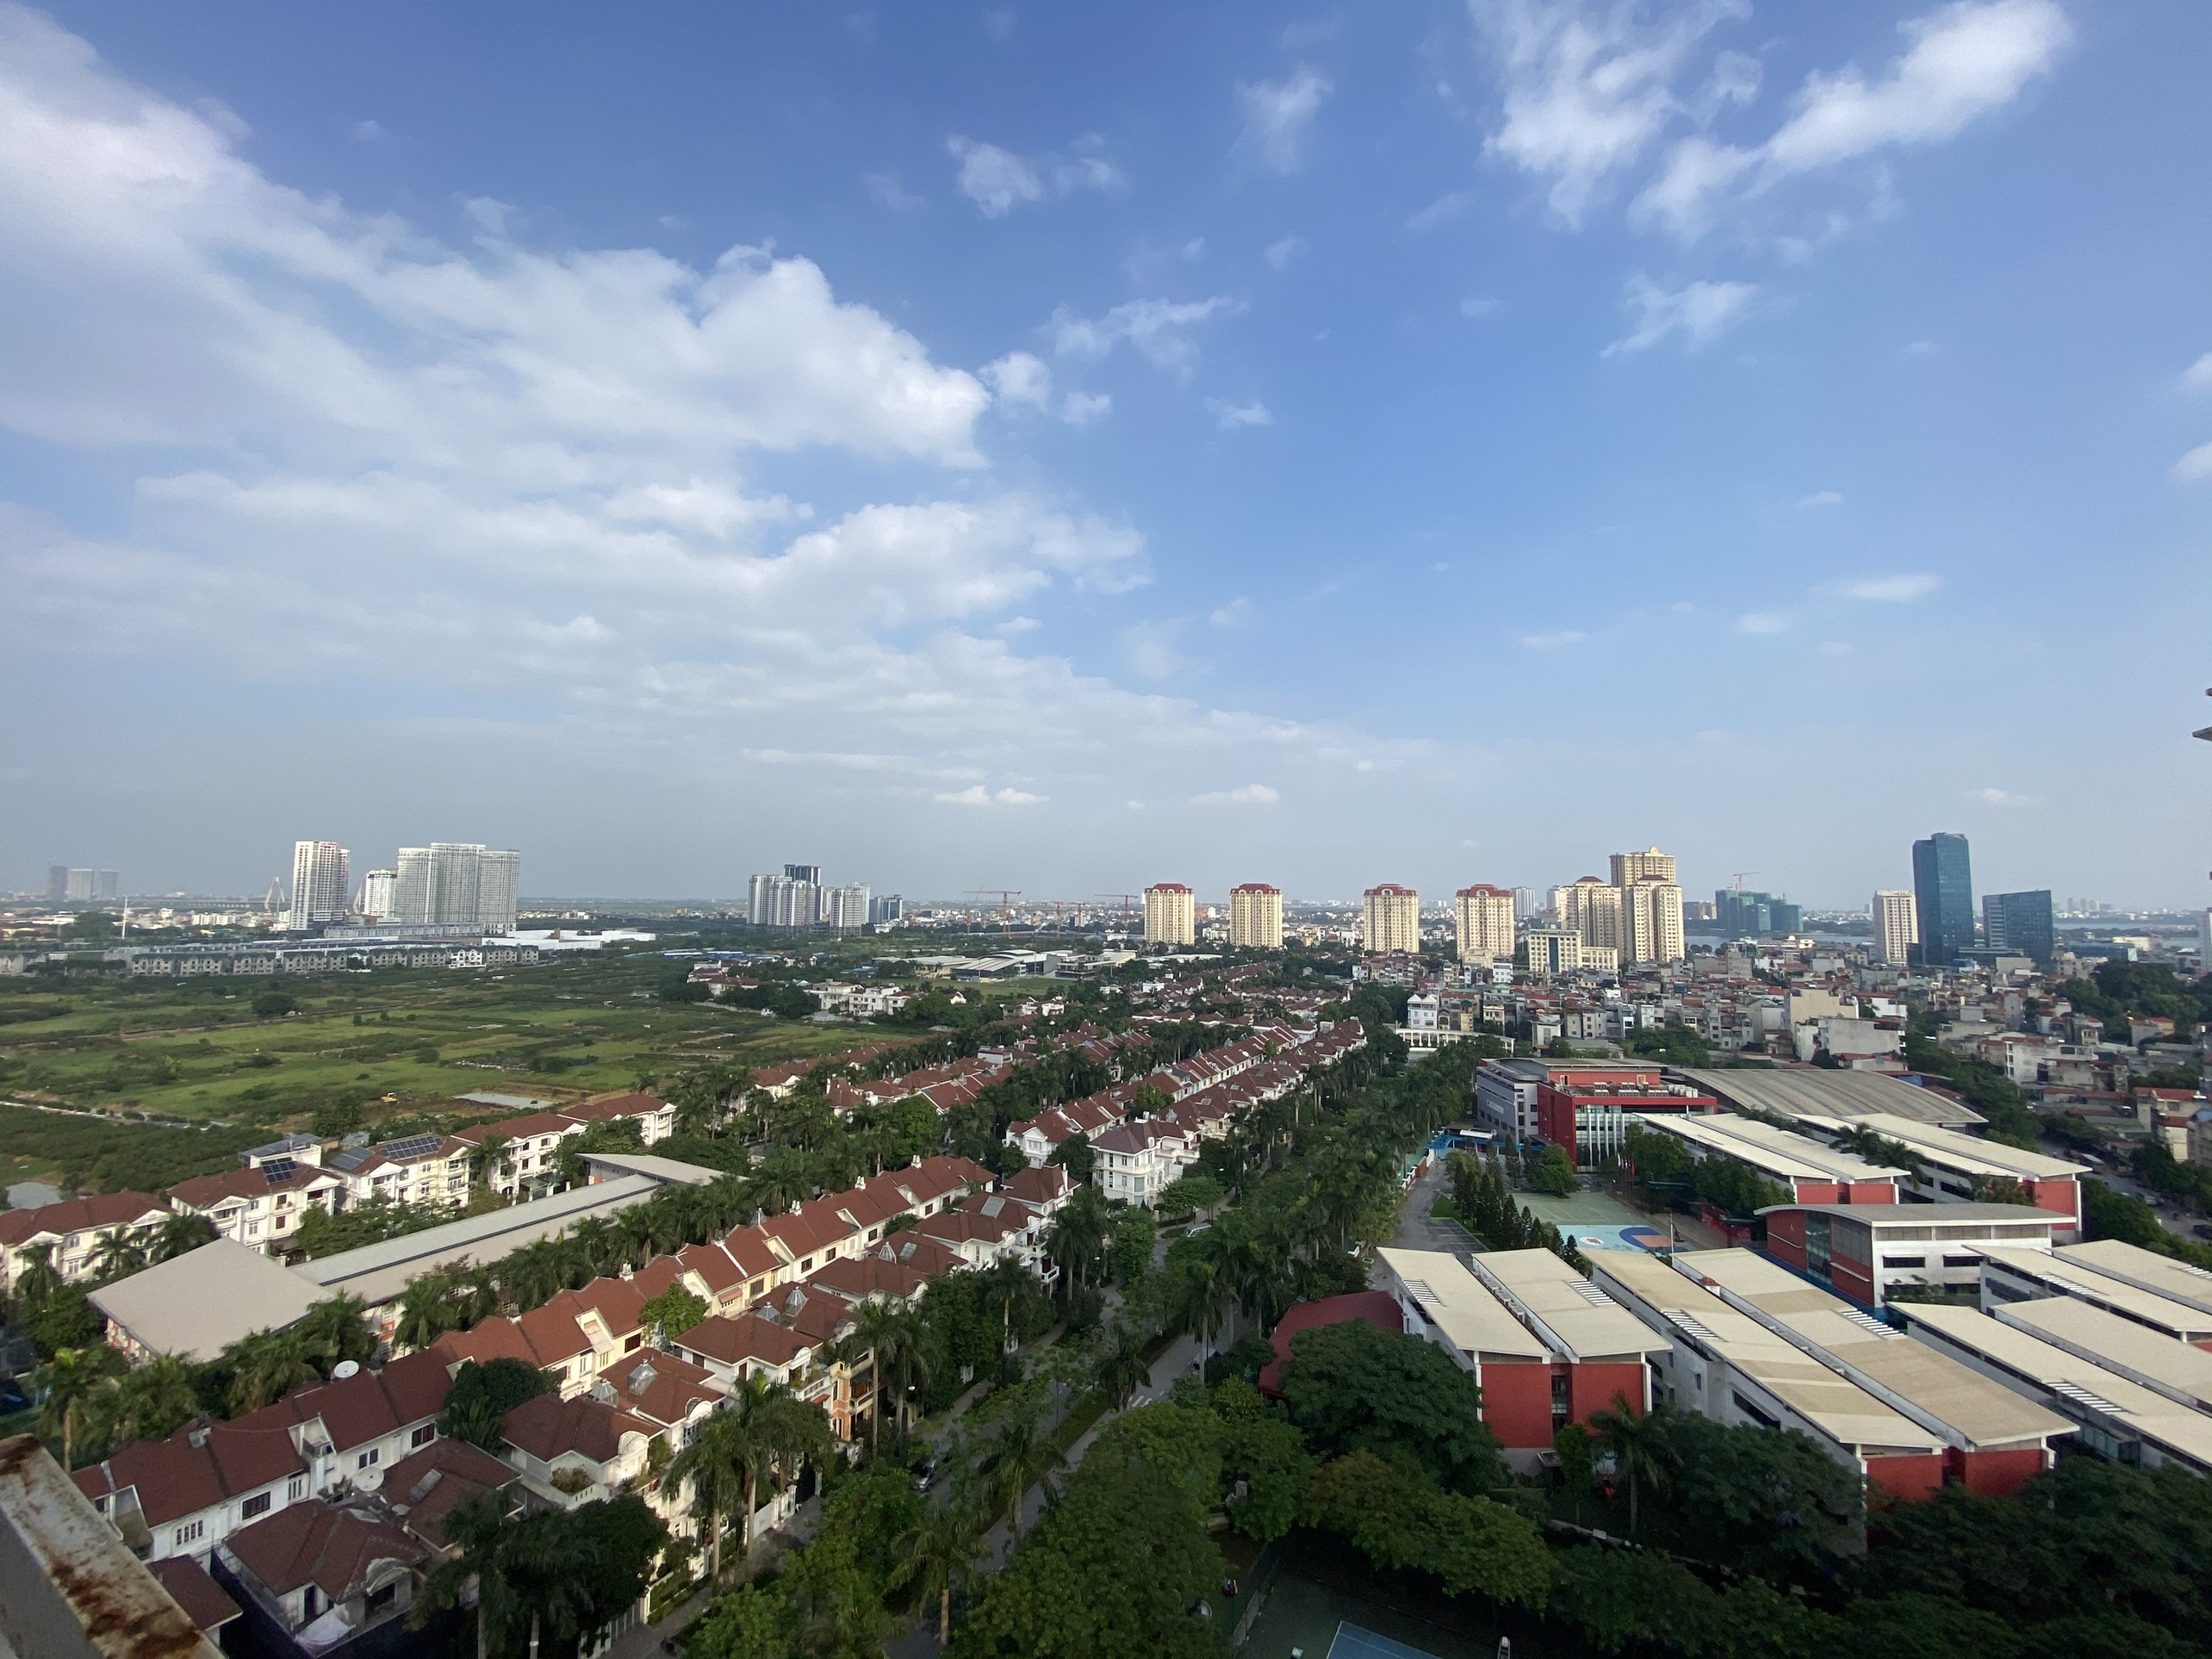 Bán căn hộ chung cư tầng cao View đẹp tại tòa E4 Chung cư Ciputra, Hà Nội